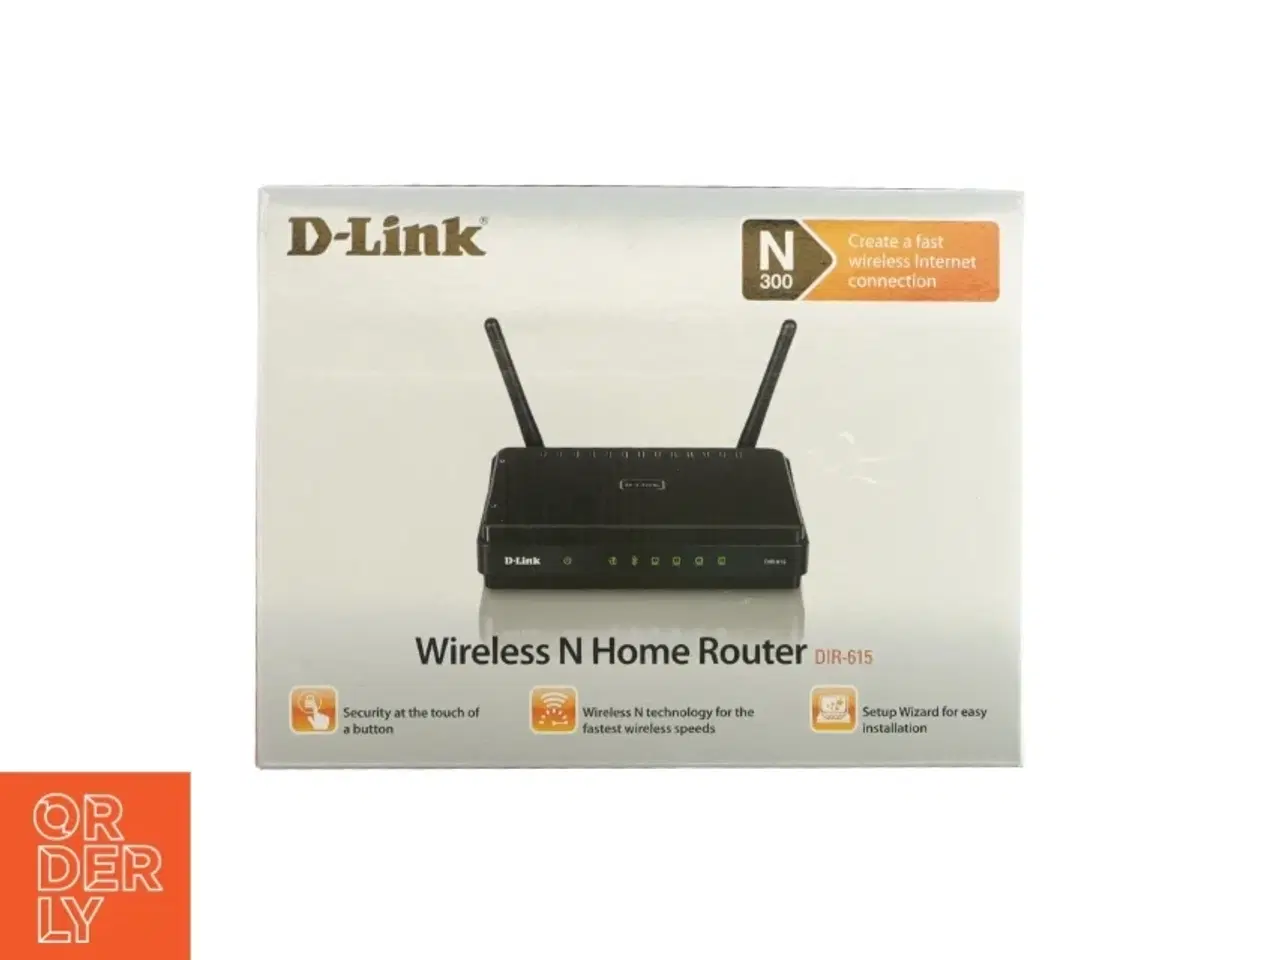 Billede 1 - Wireless home router fra D-link